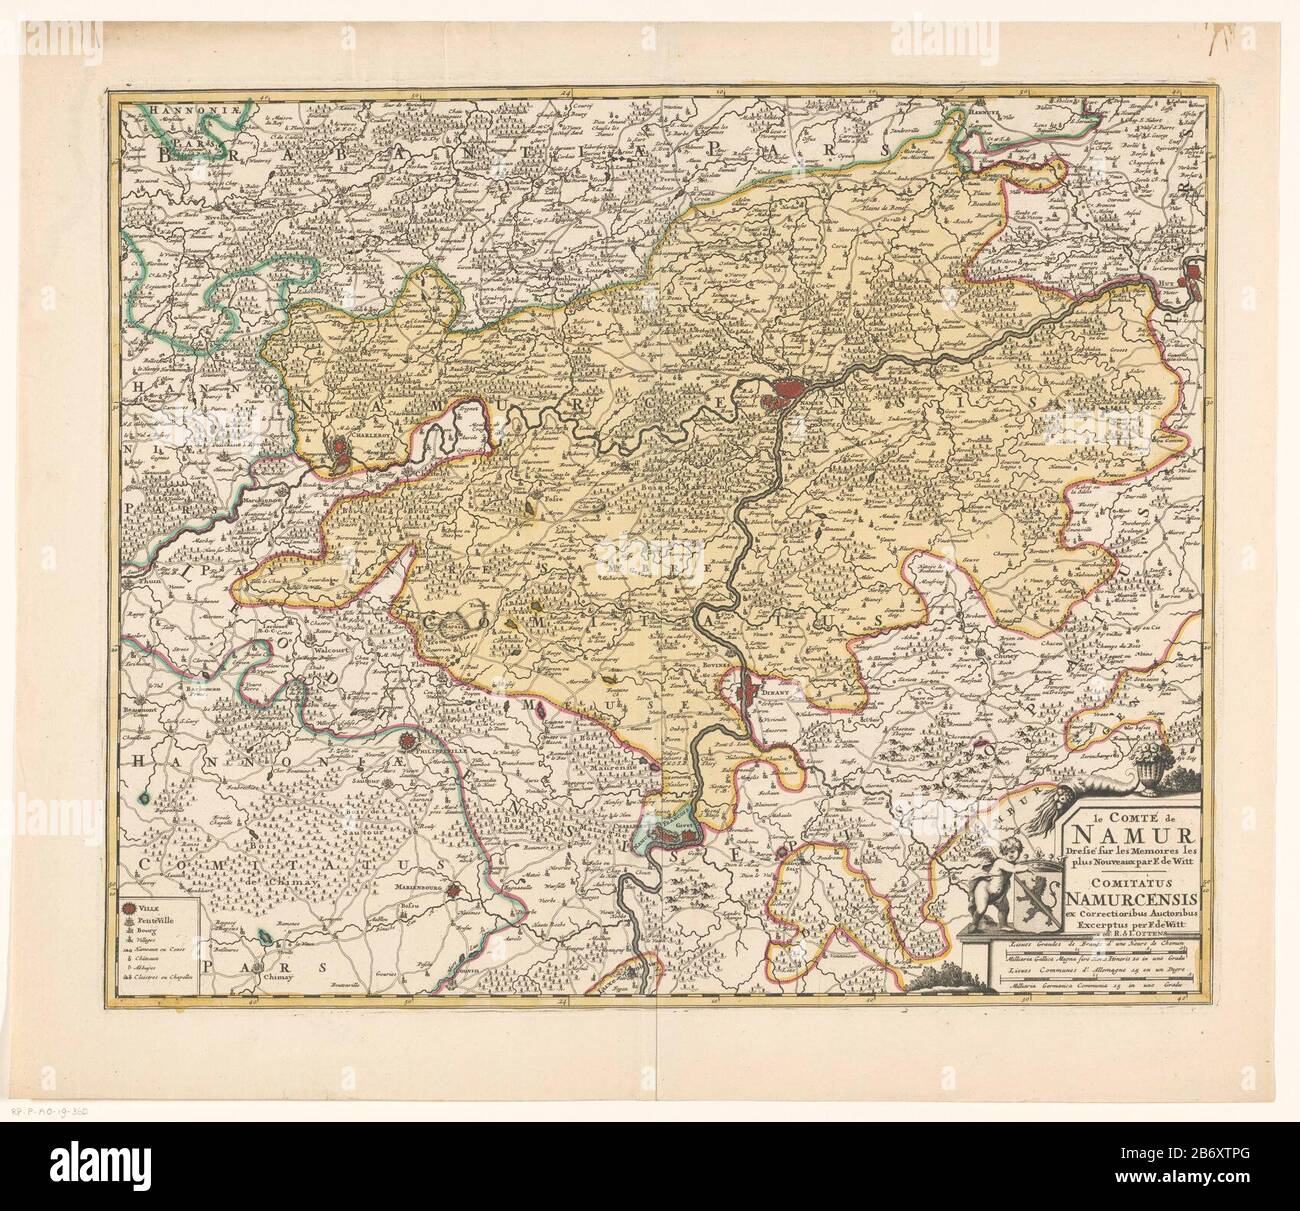 Mapa del condado de Namur. Justo debajo del título cartouche con los brazos  del condado de Namur y la escala de los dos polos inferiores: Lieues  grandes de France d'une Heurde Chemin /